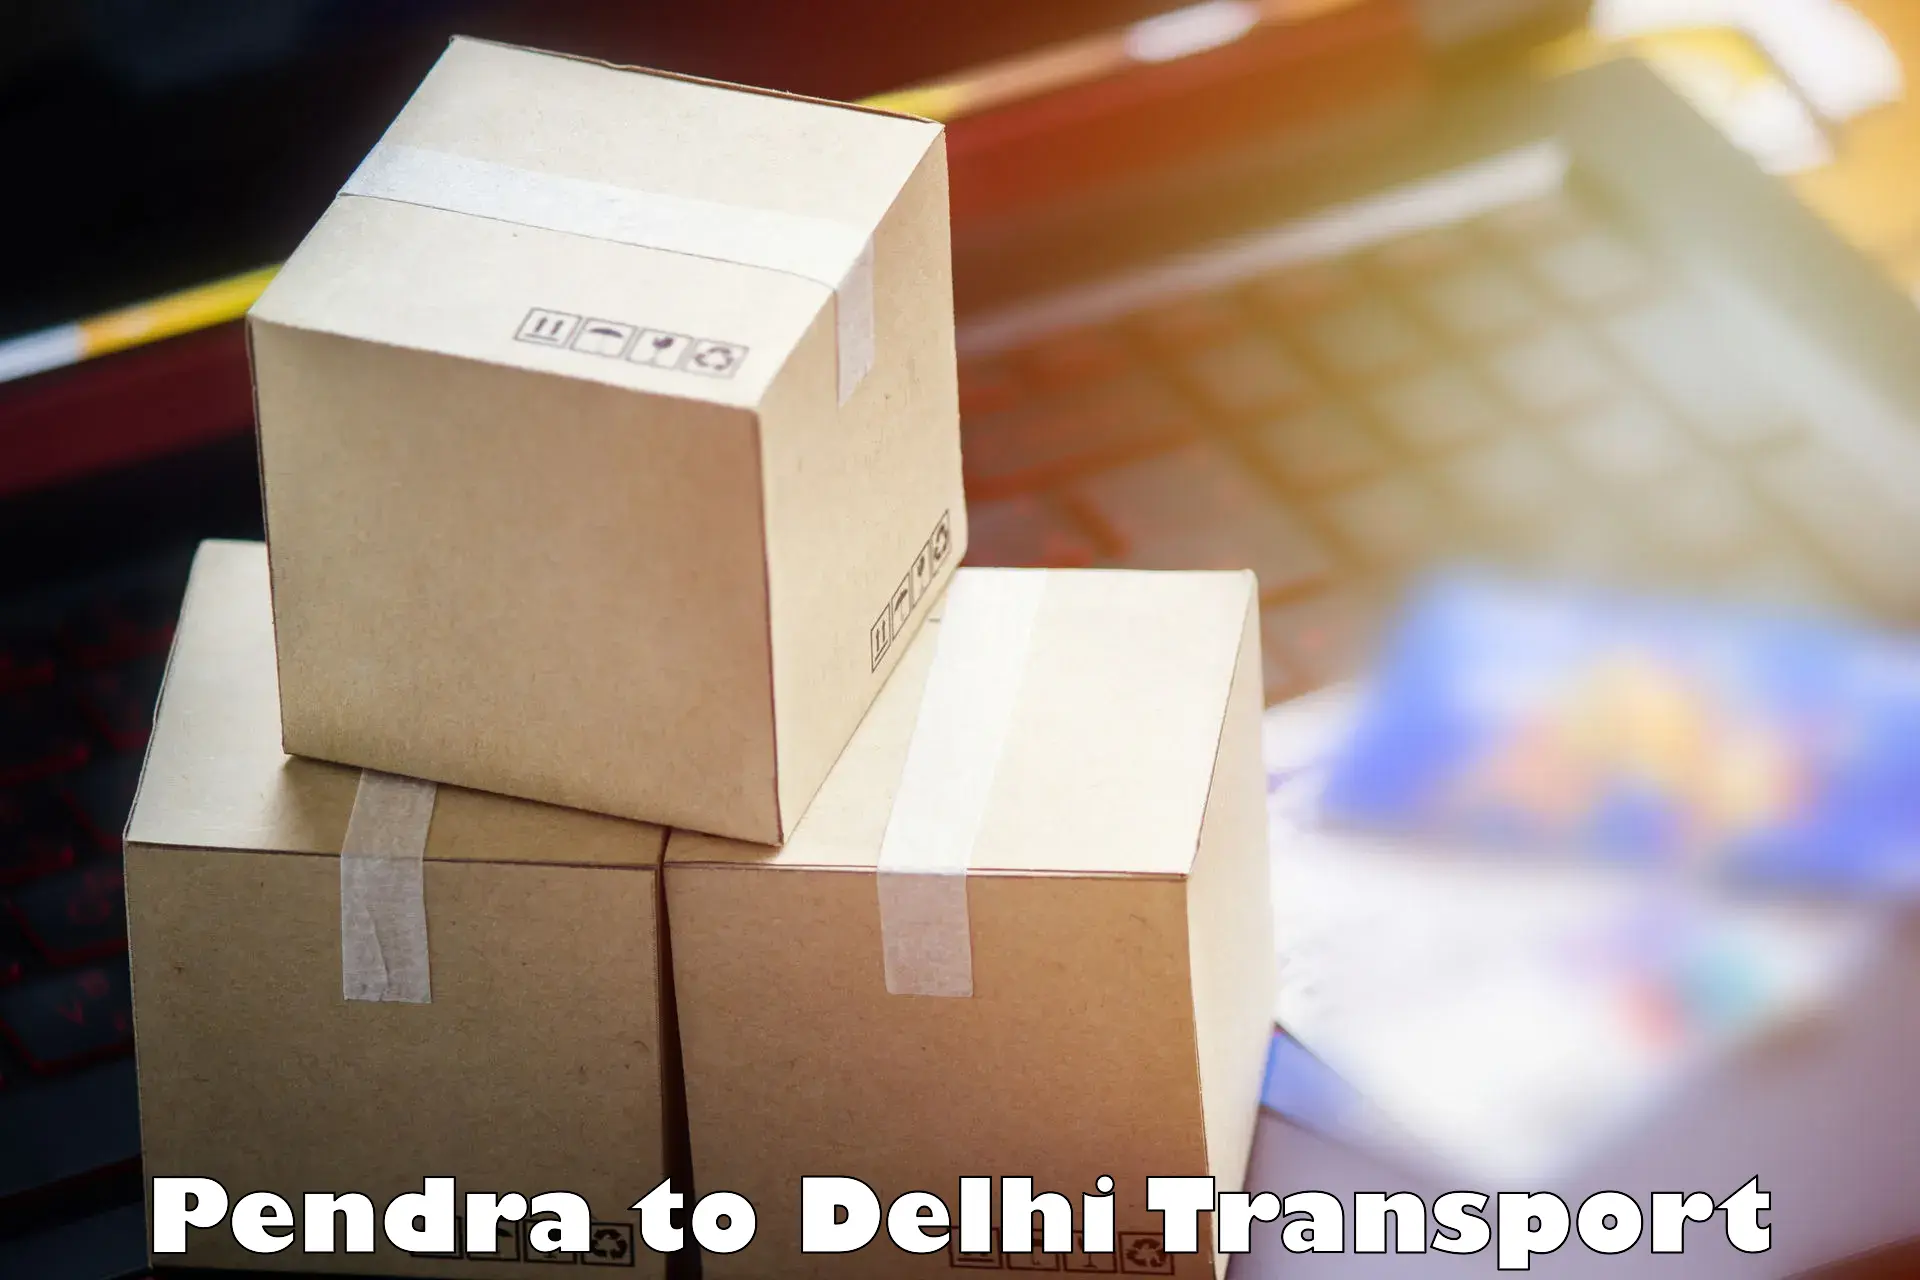 Container transport service Pendra to Delhi